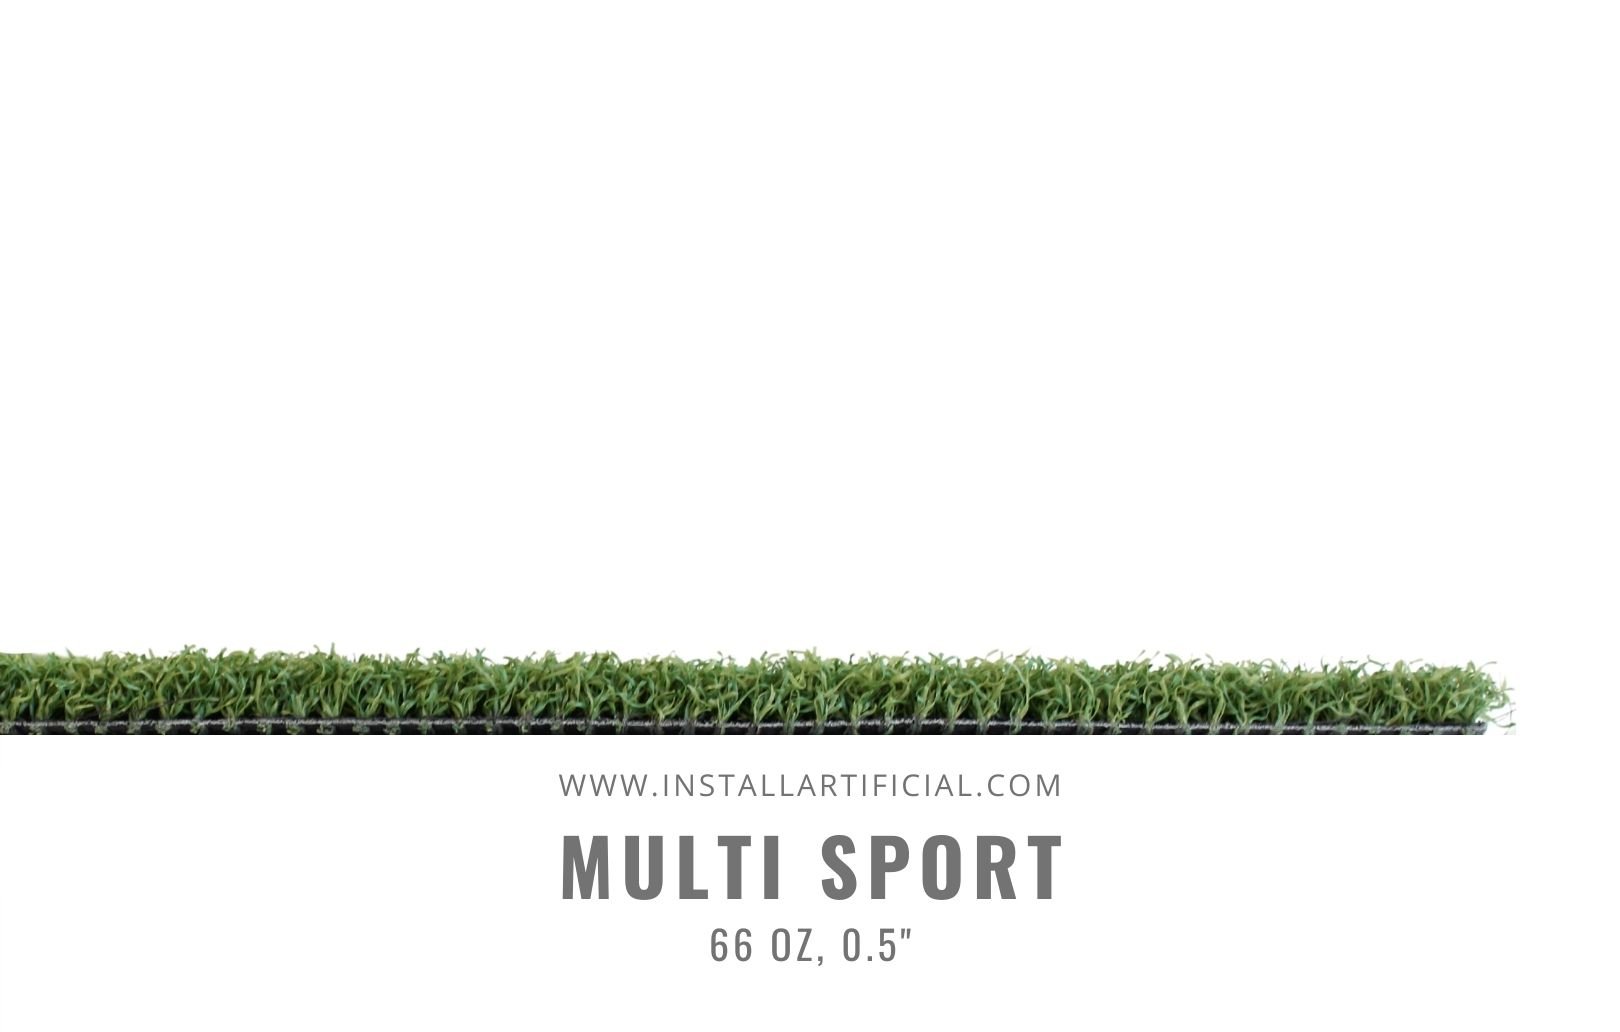 Multi Sport, Smart Turf, Side View